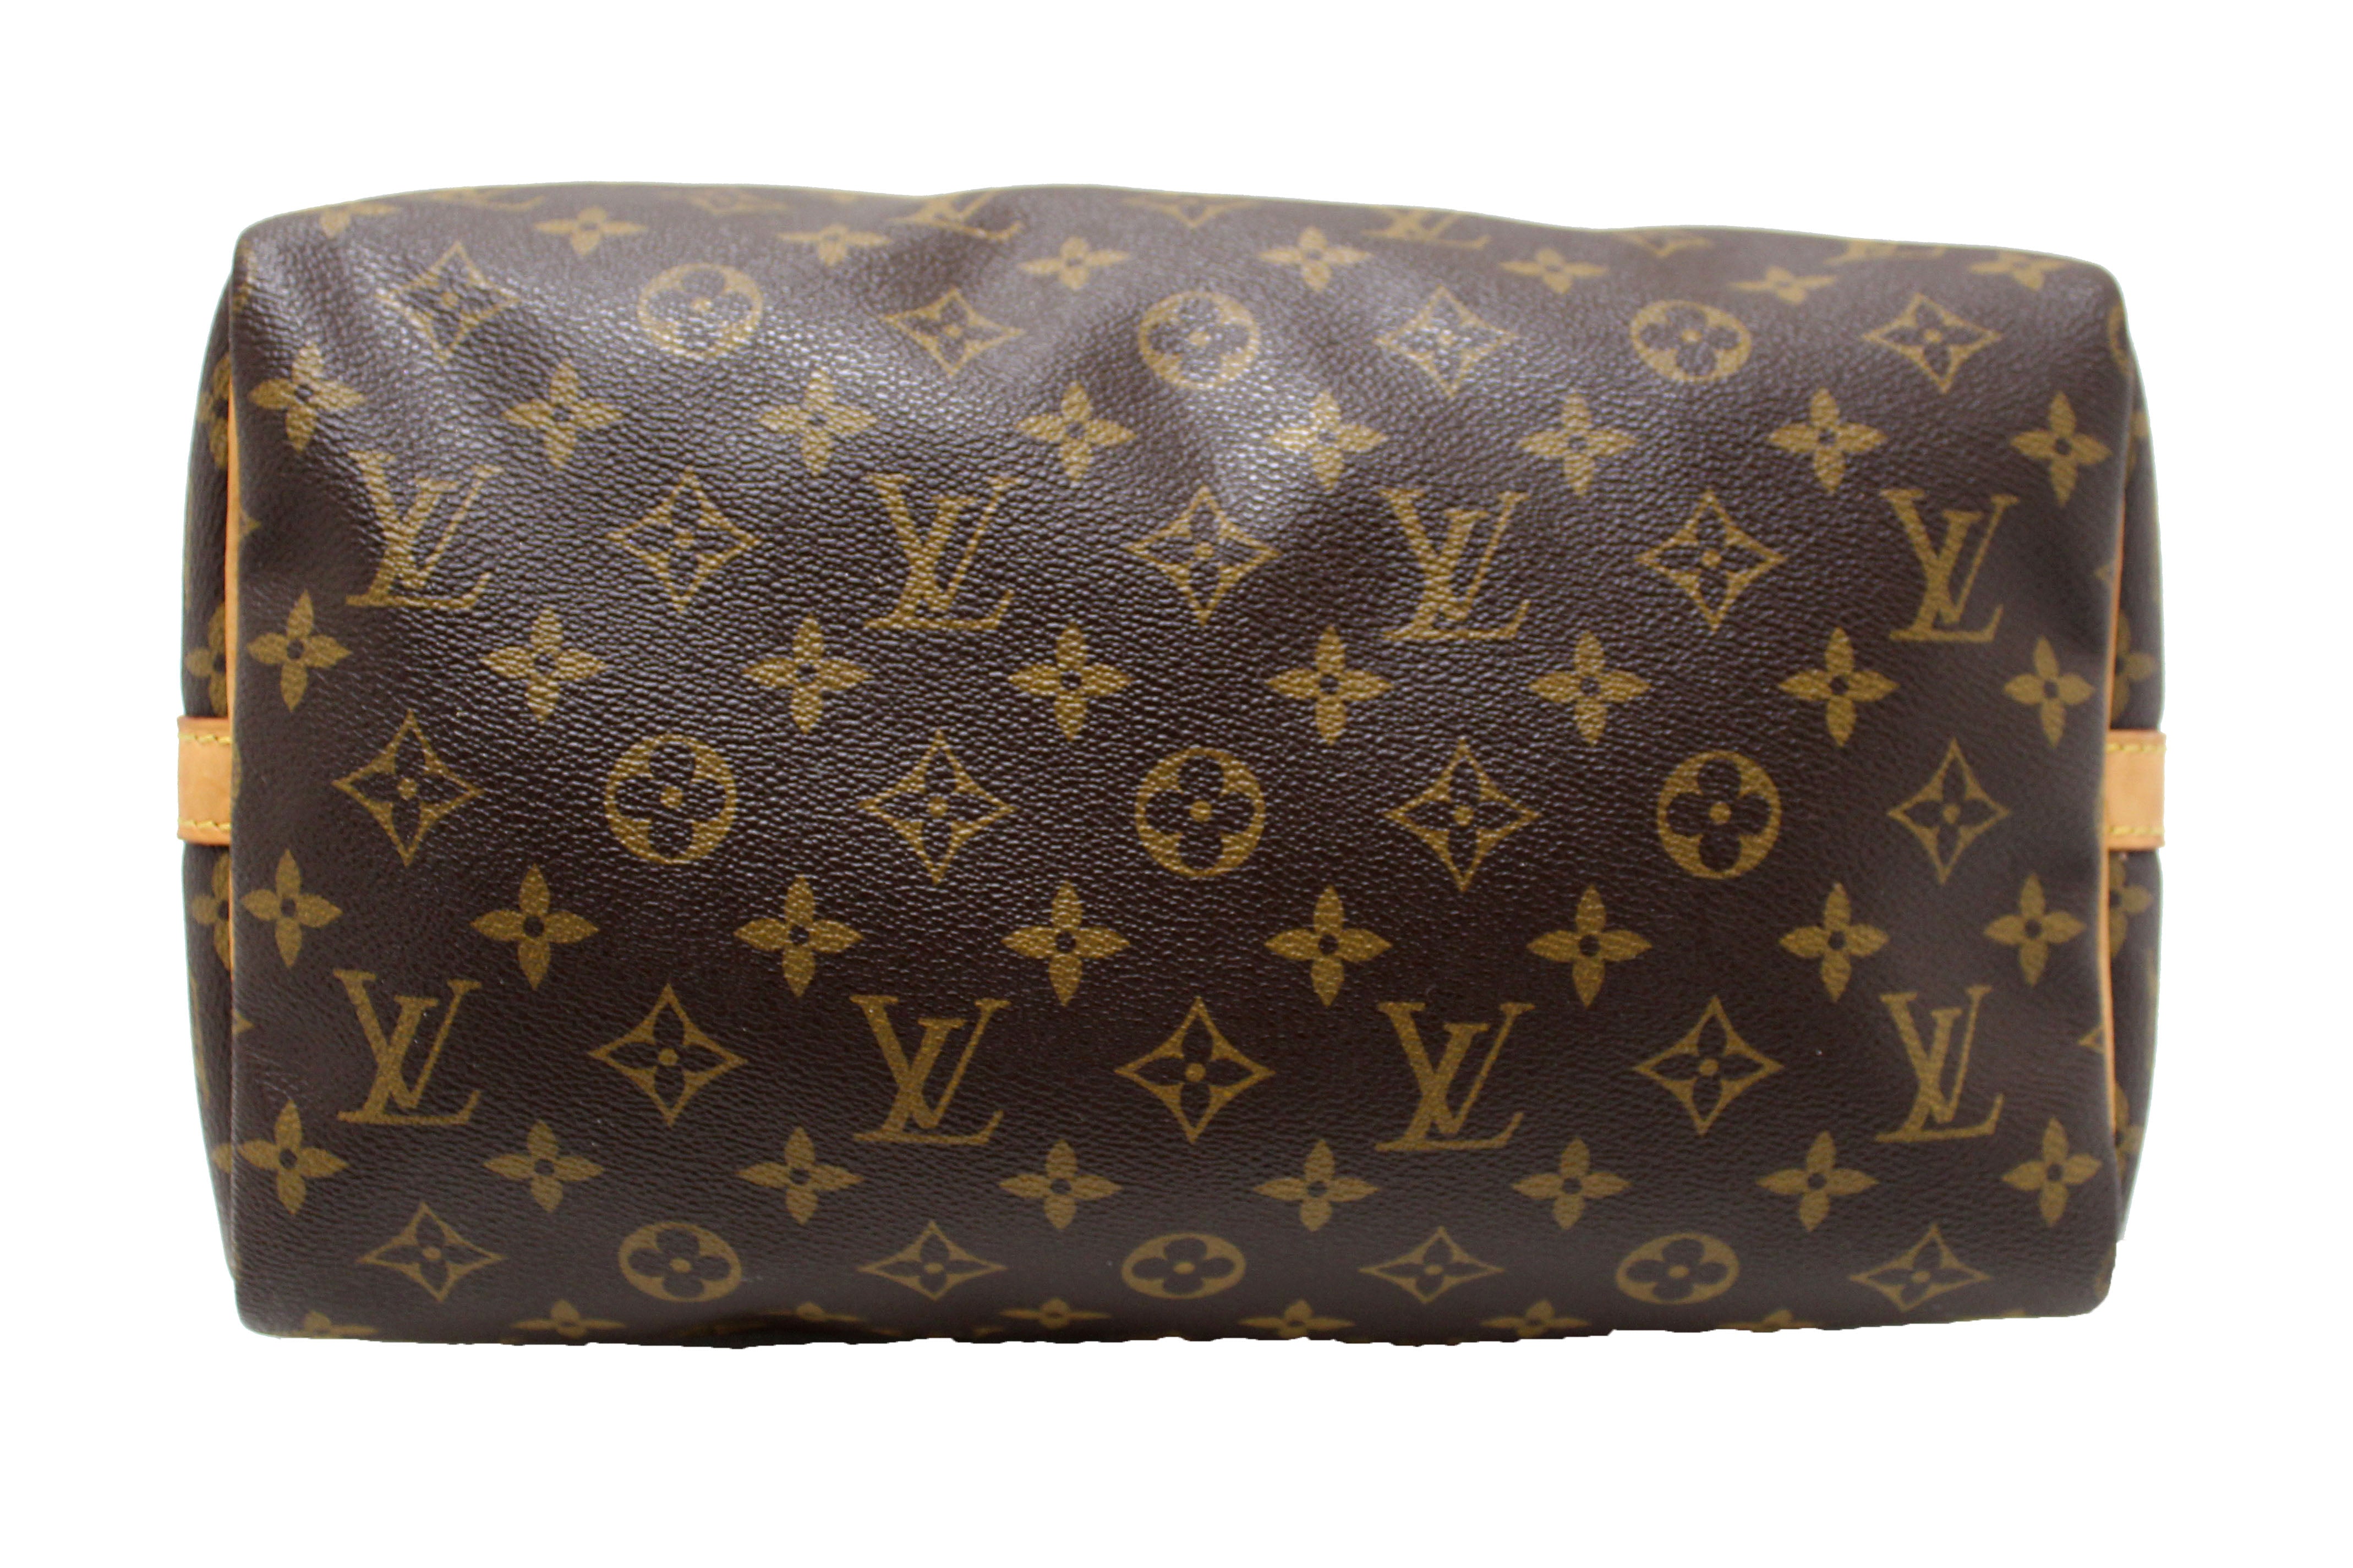 LOUIS VUITTON, a monogram canvas and metallic 'Speedy 30' handbag